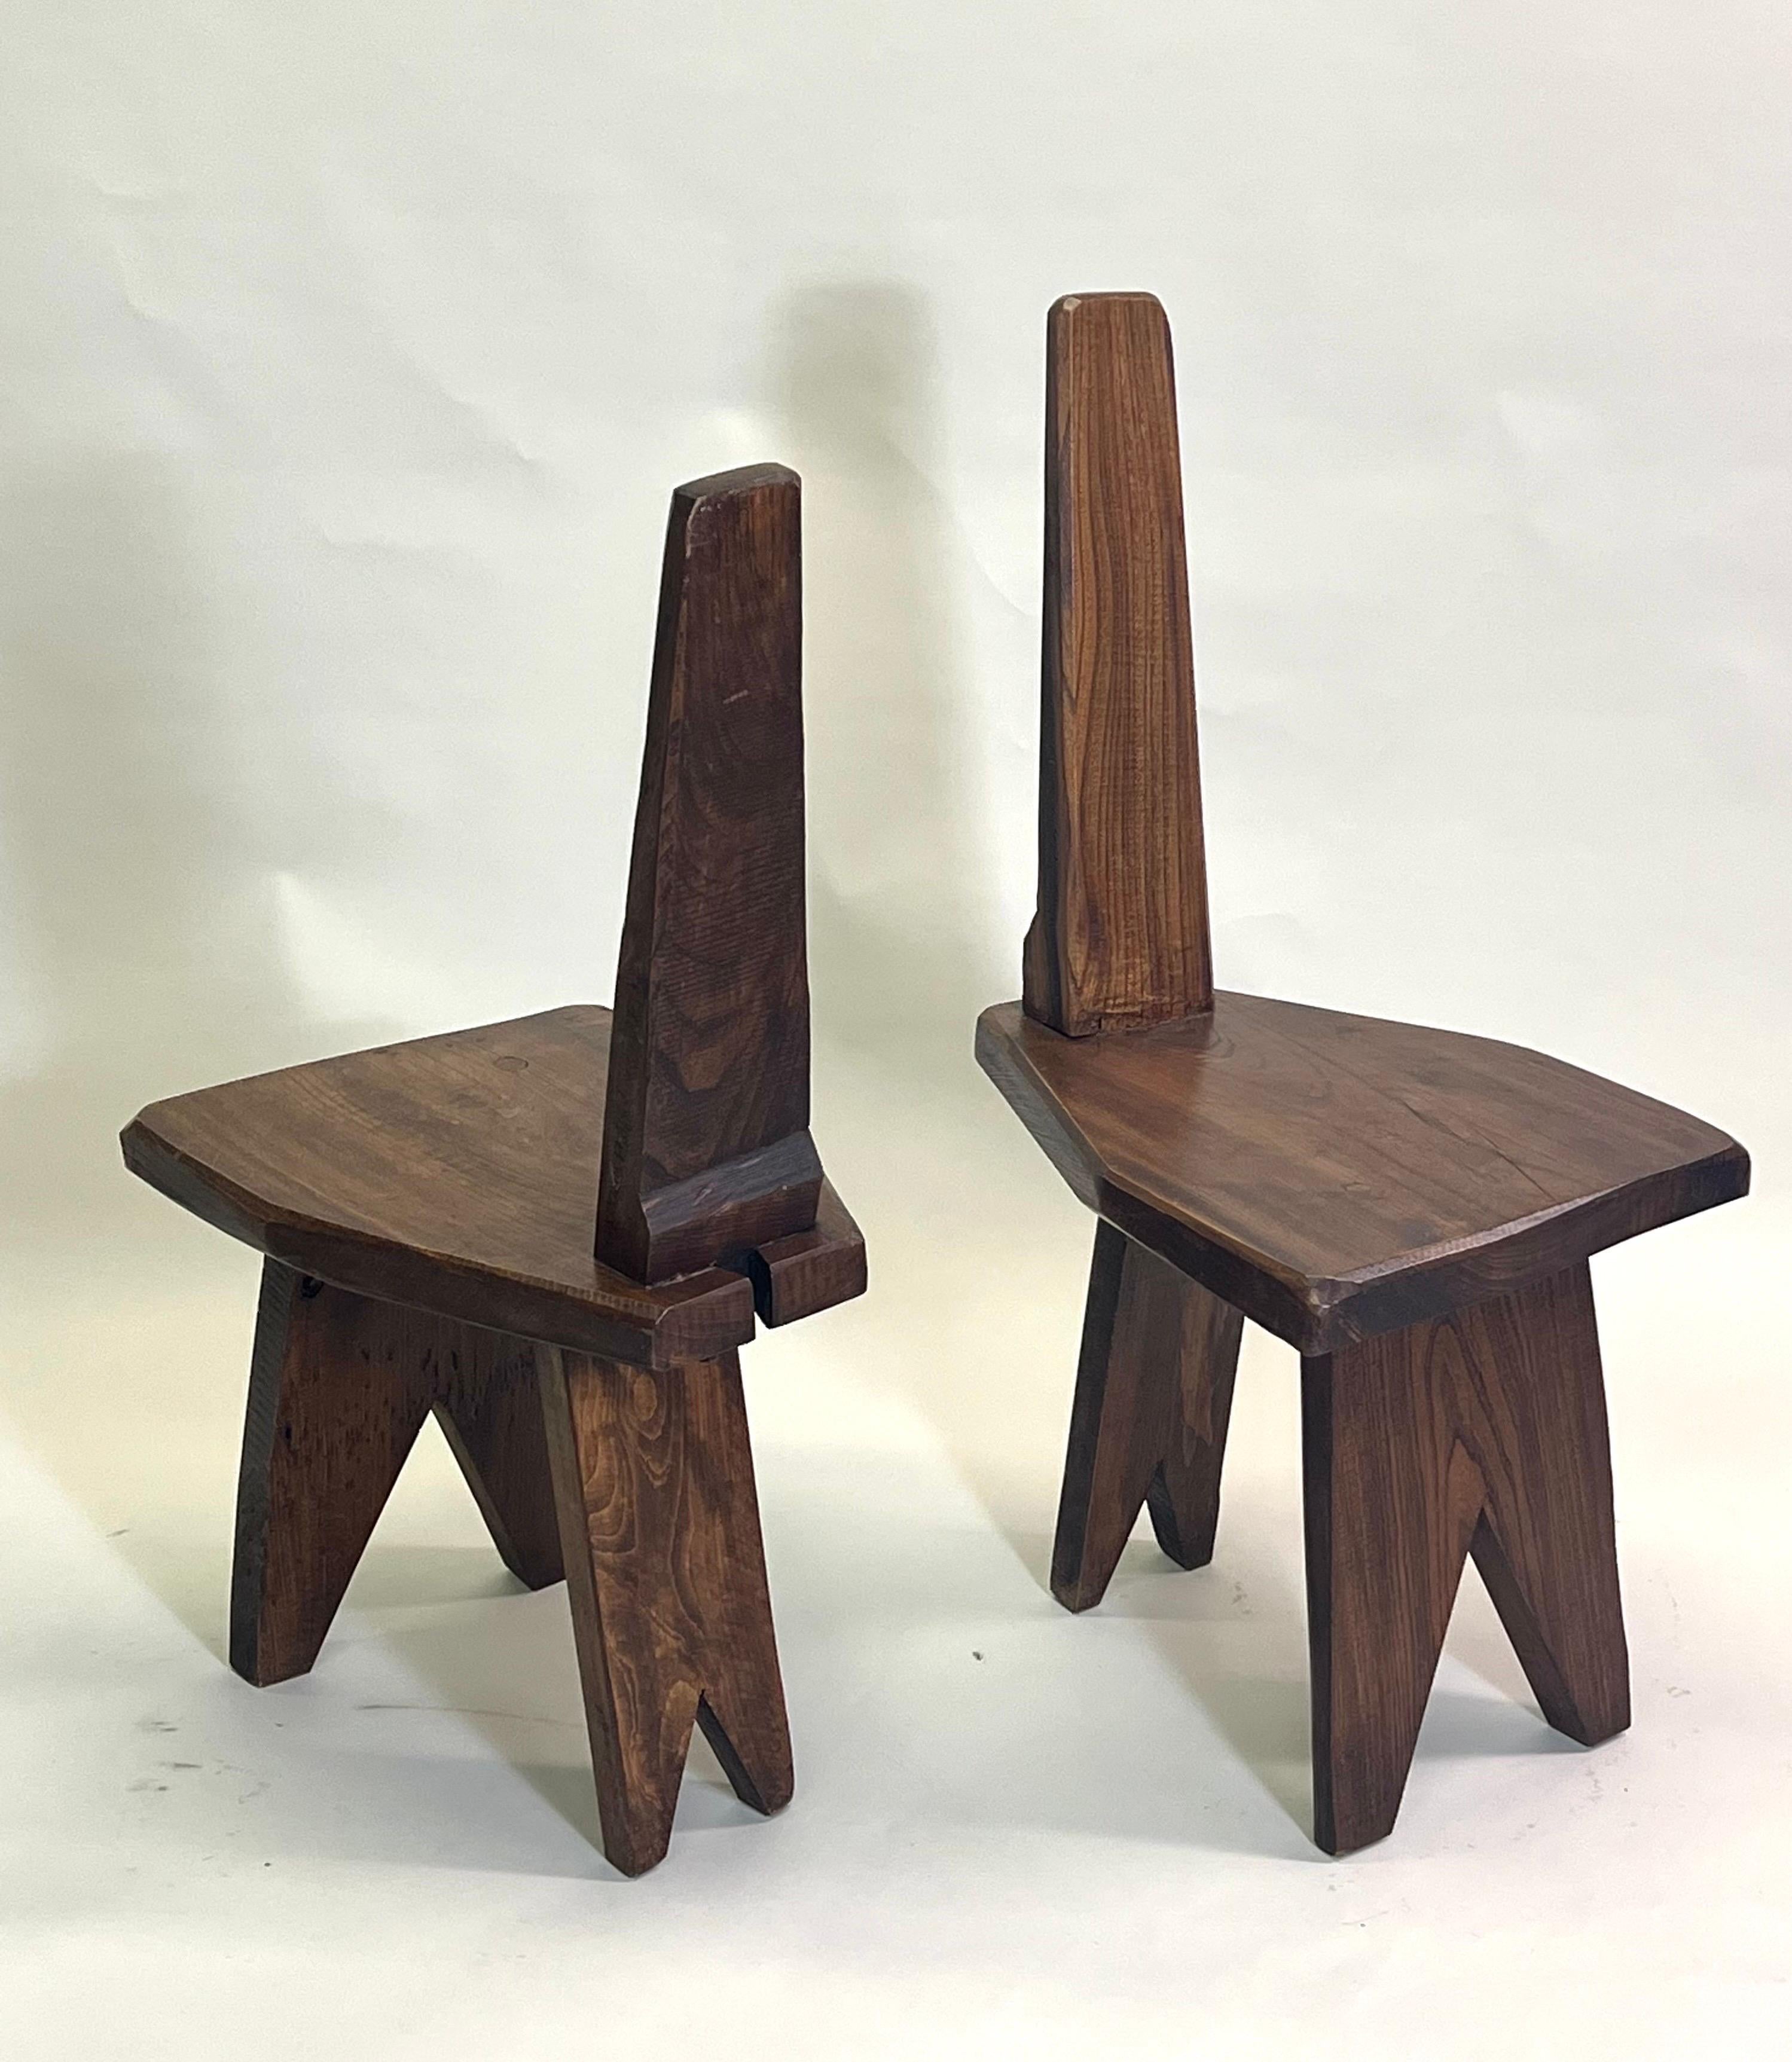 Elegante paire de chaises d'appoint ou de salon de style artisanal français du milieu du siècle dernier, dans le style de Pierre Jeanneret. Les chaises sont une création originale, faite à la main, datant de la période 1960-1970 en France. Ils